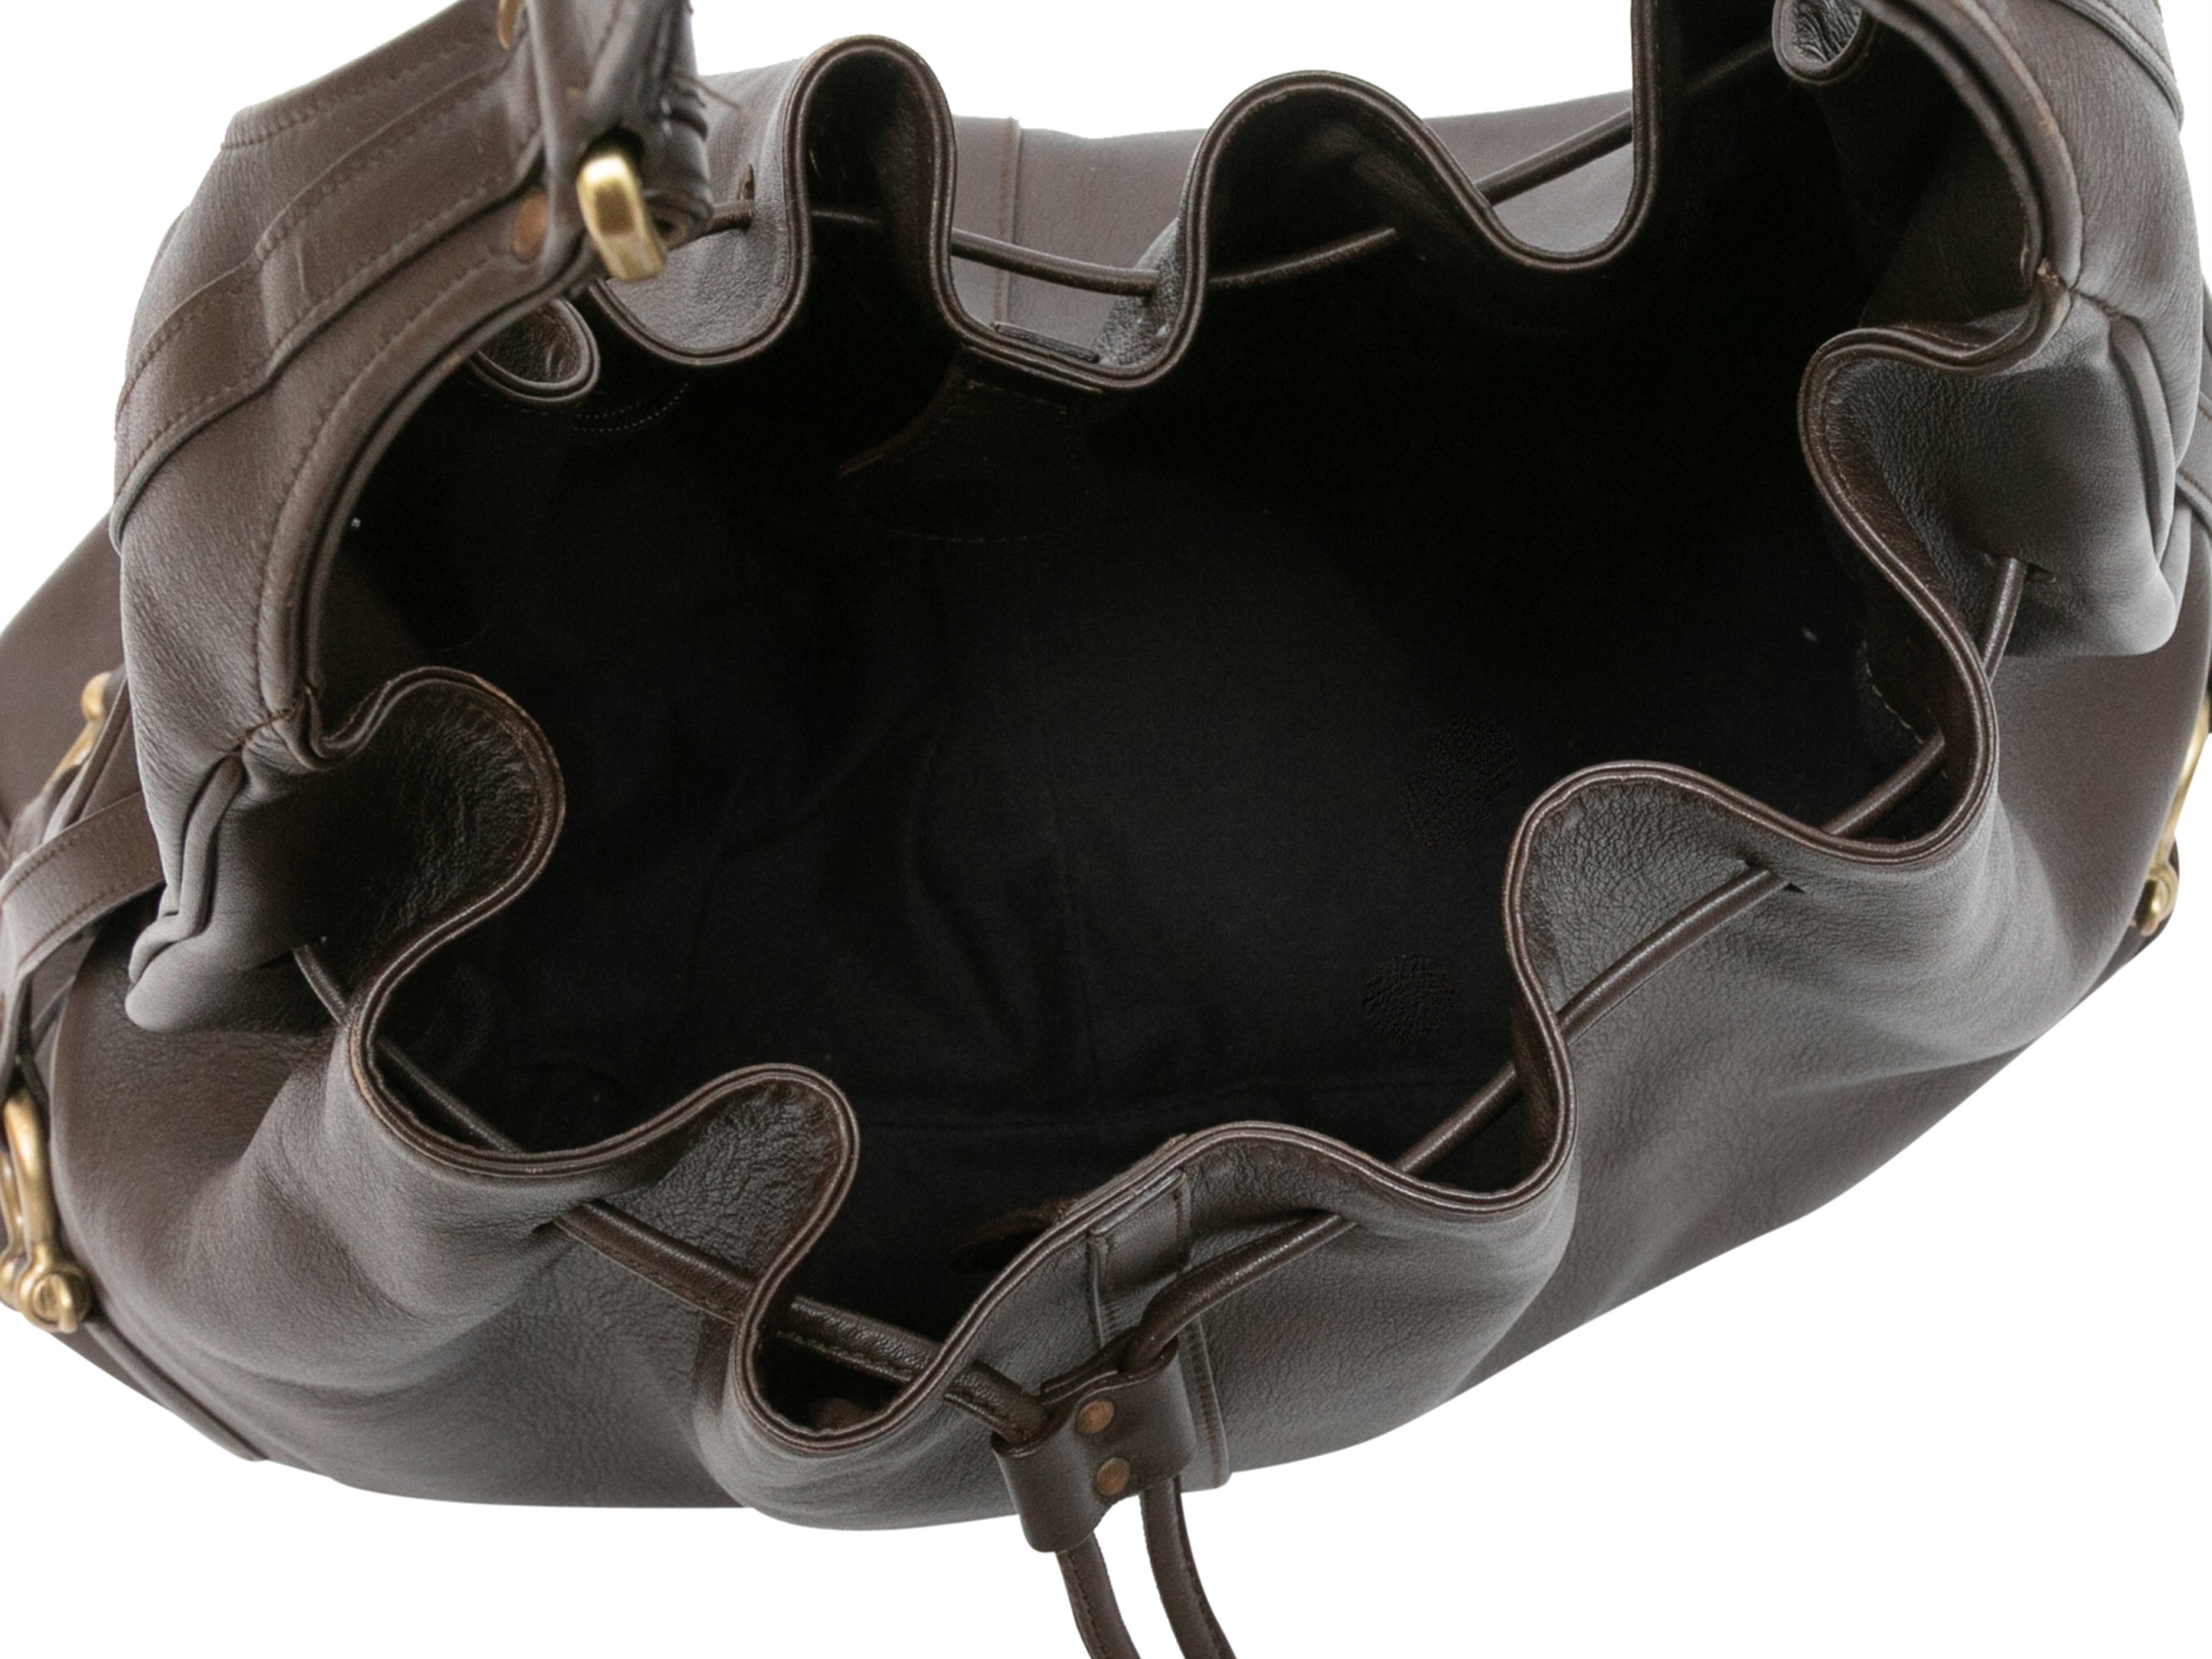 Burberry Bartow Brown Leather Hobo Bag